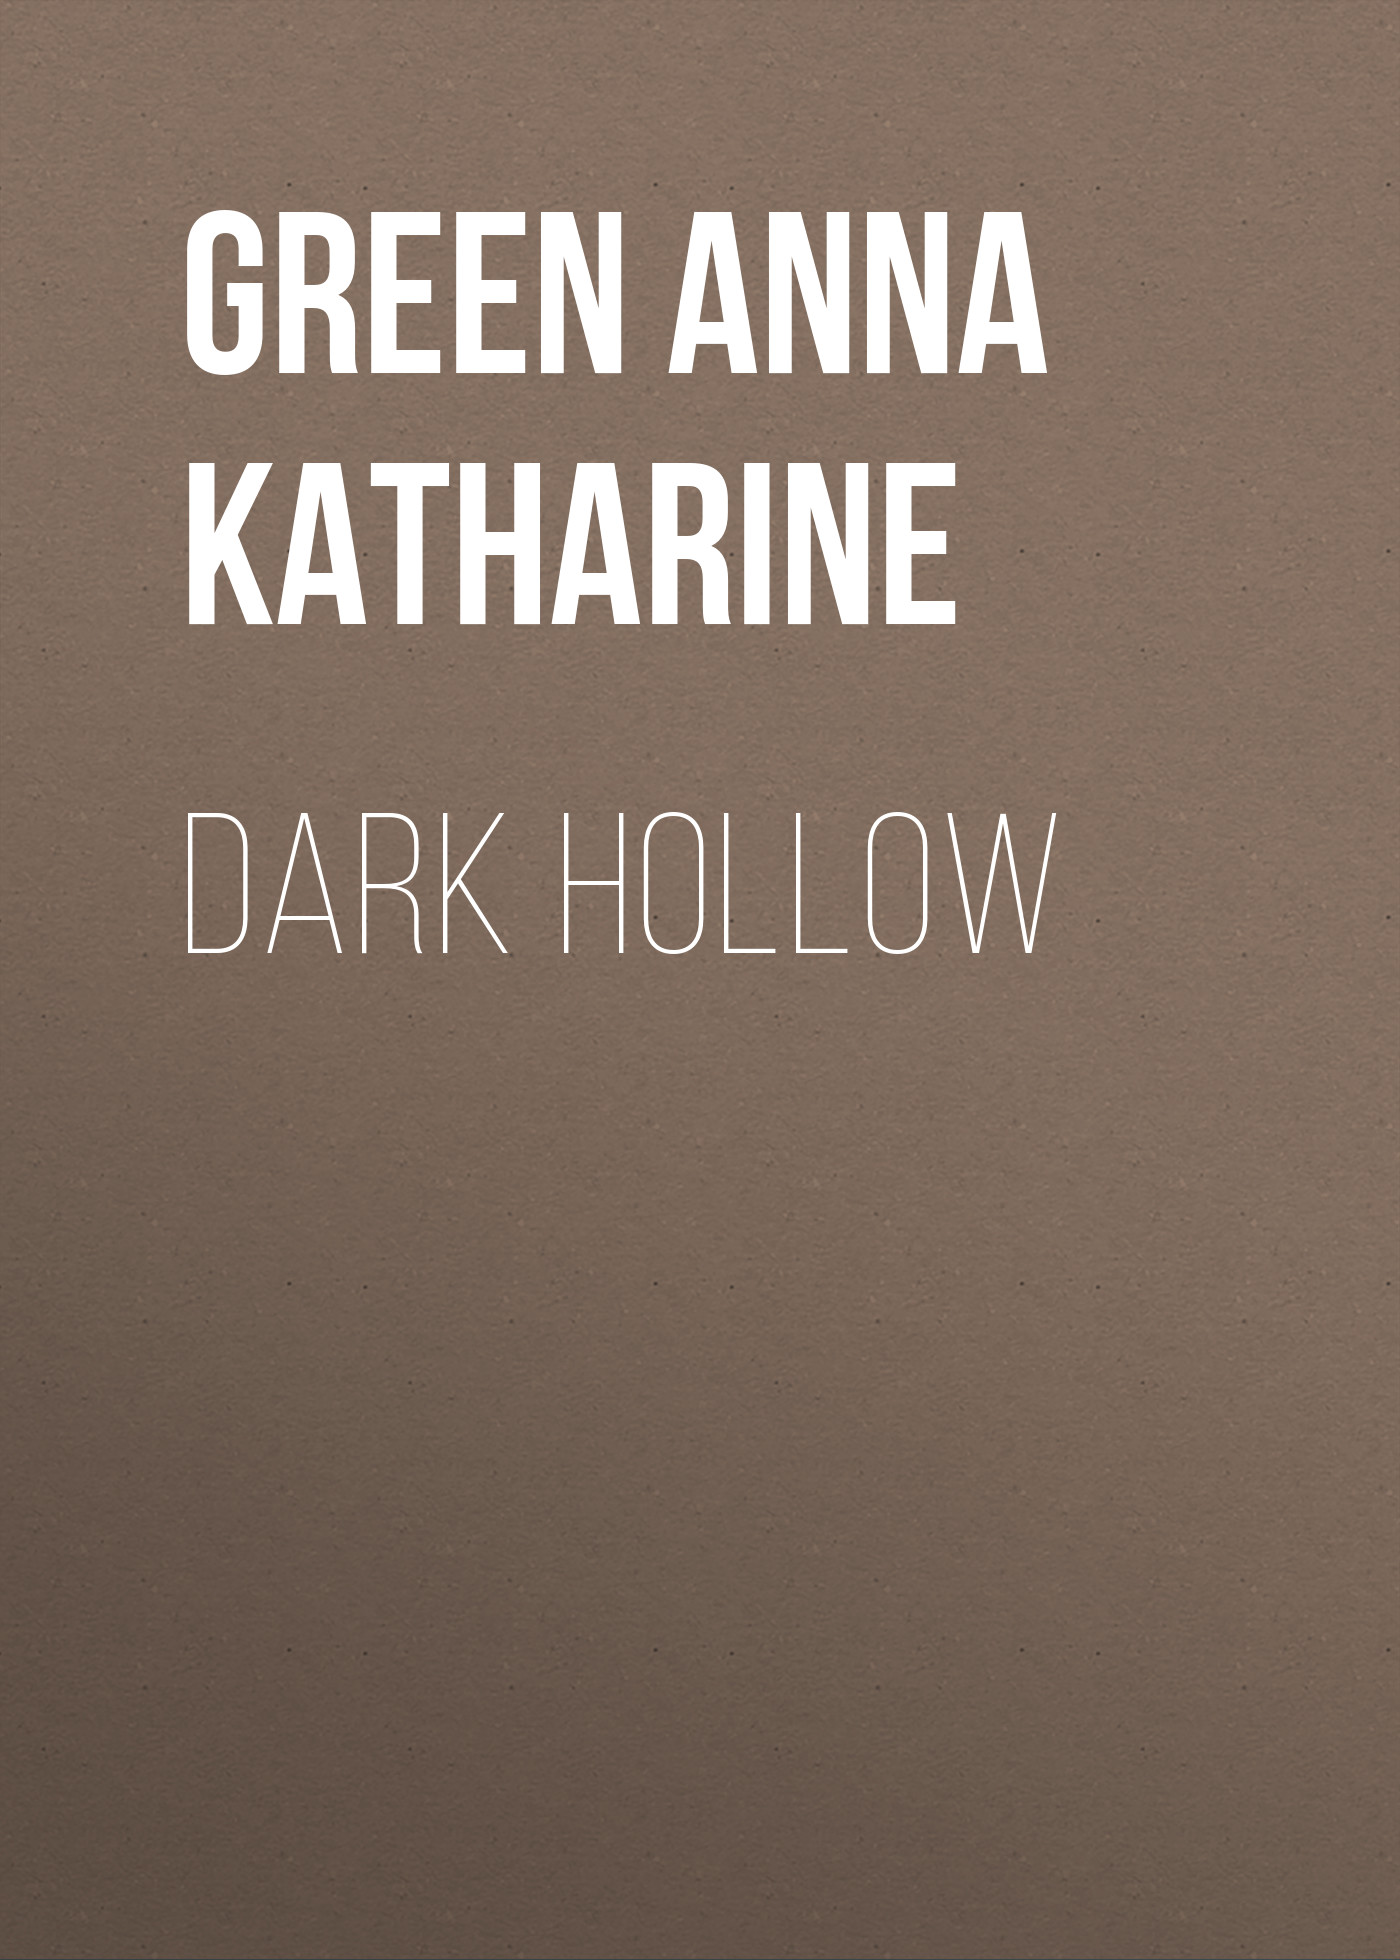 Книга Dark Hollow из серии , созданная Anna Green, может относится к жанру Зарубежная классика, Классические детективы, Зарубежные детективы, Зарубежная старинная литература. Стоимость электронной книги Dark Hollow с идентификатором 36095717 составляет 0 руб.